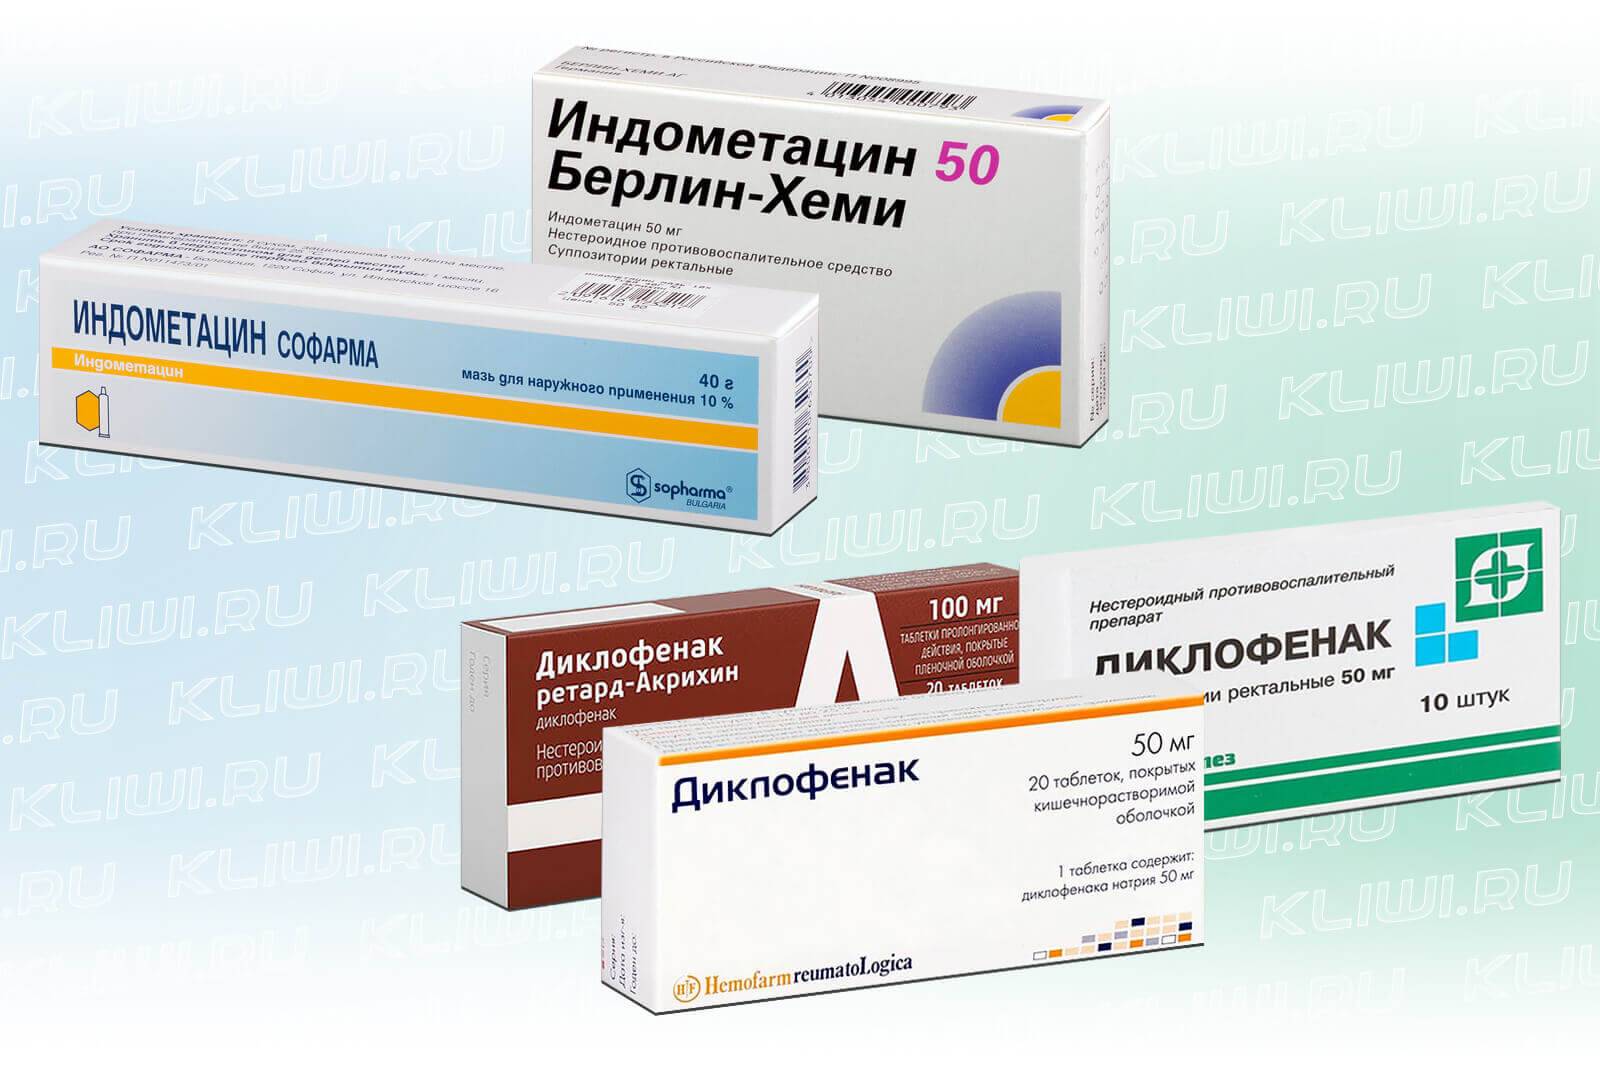 Индометацин аналоги и цены - поиск лекарств